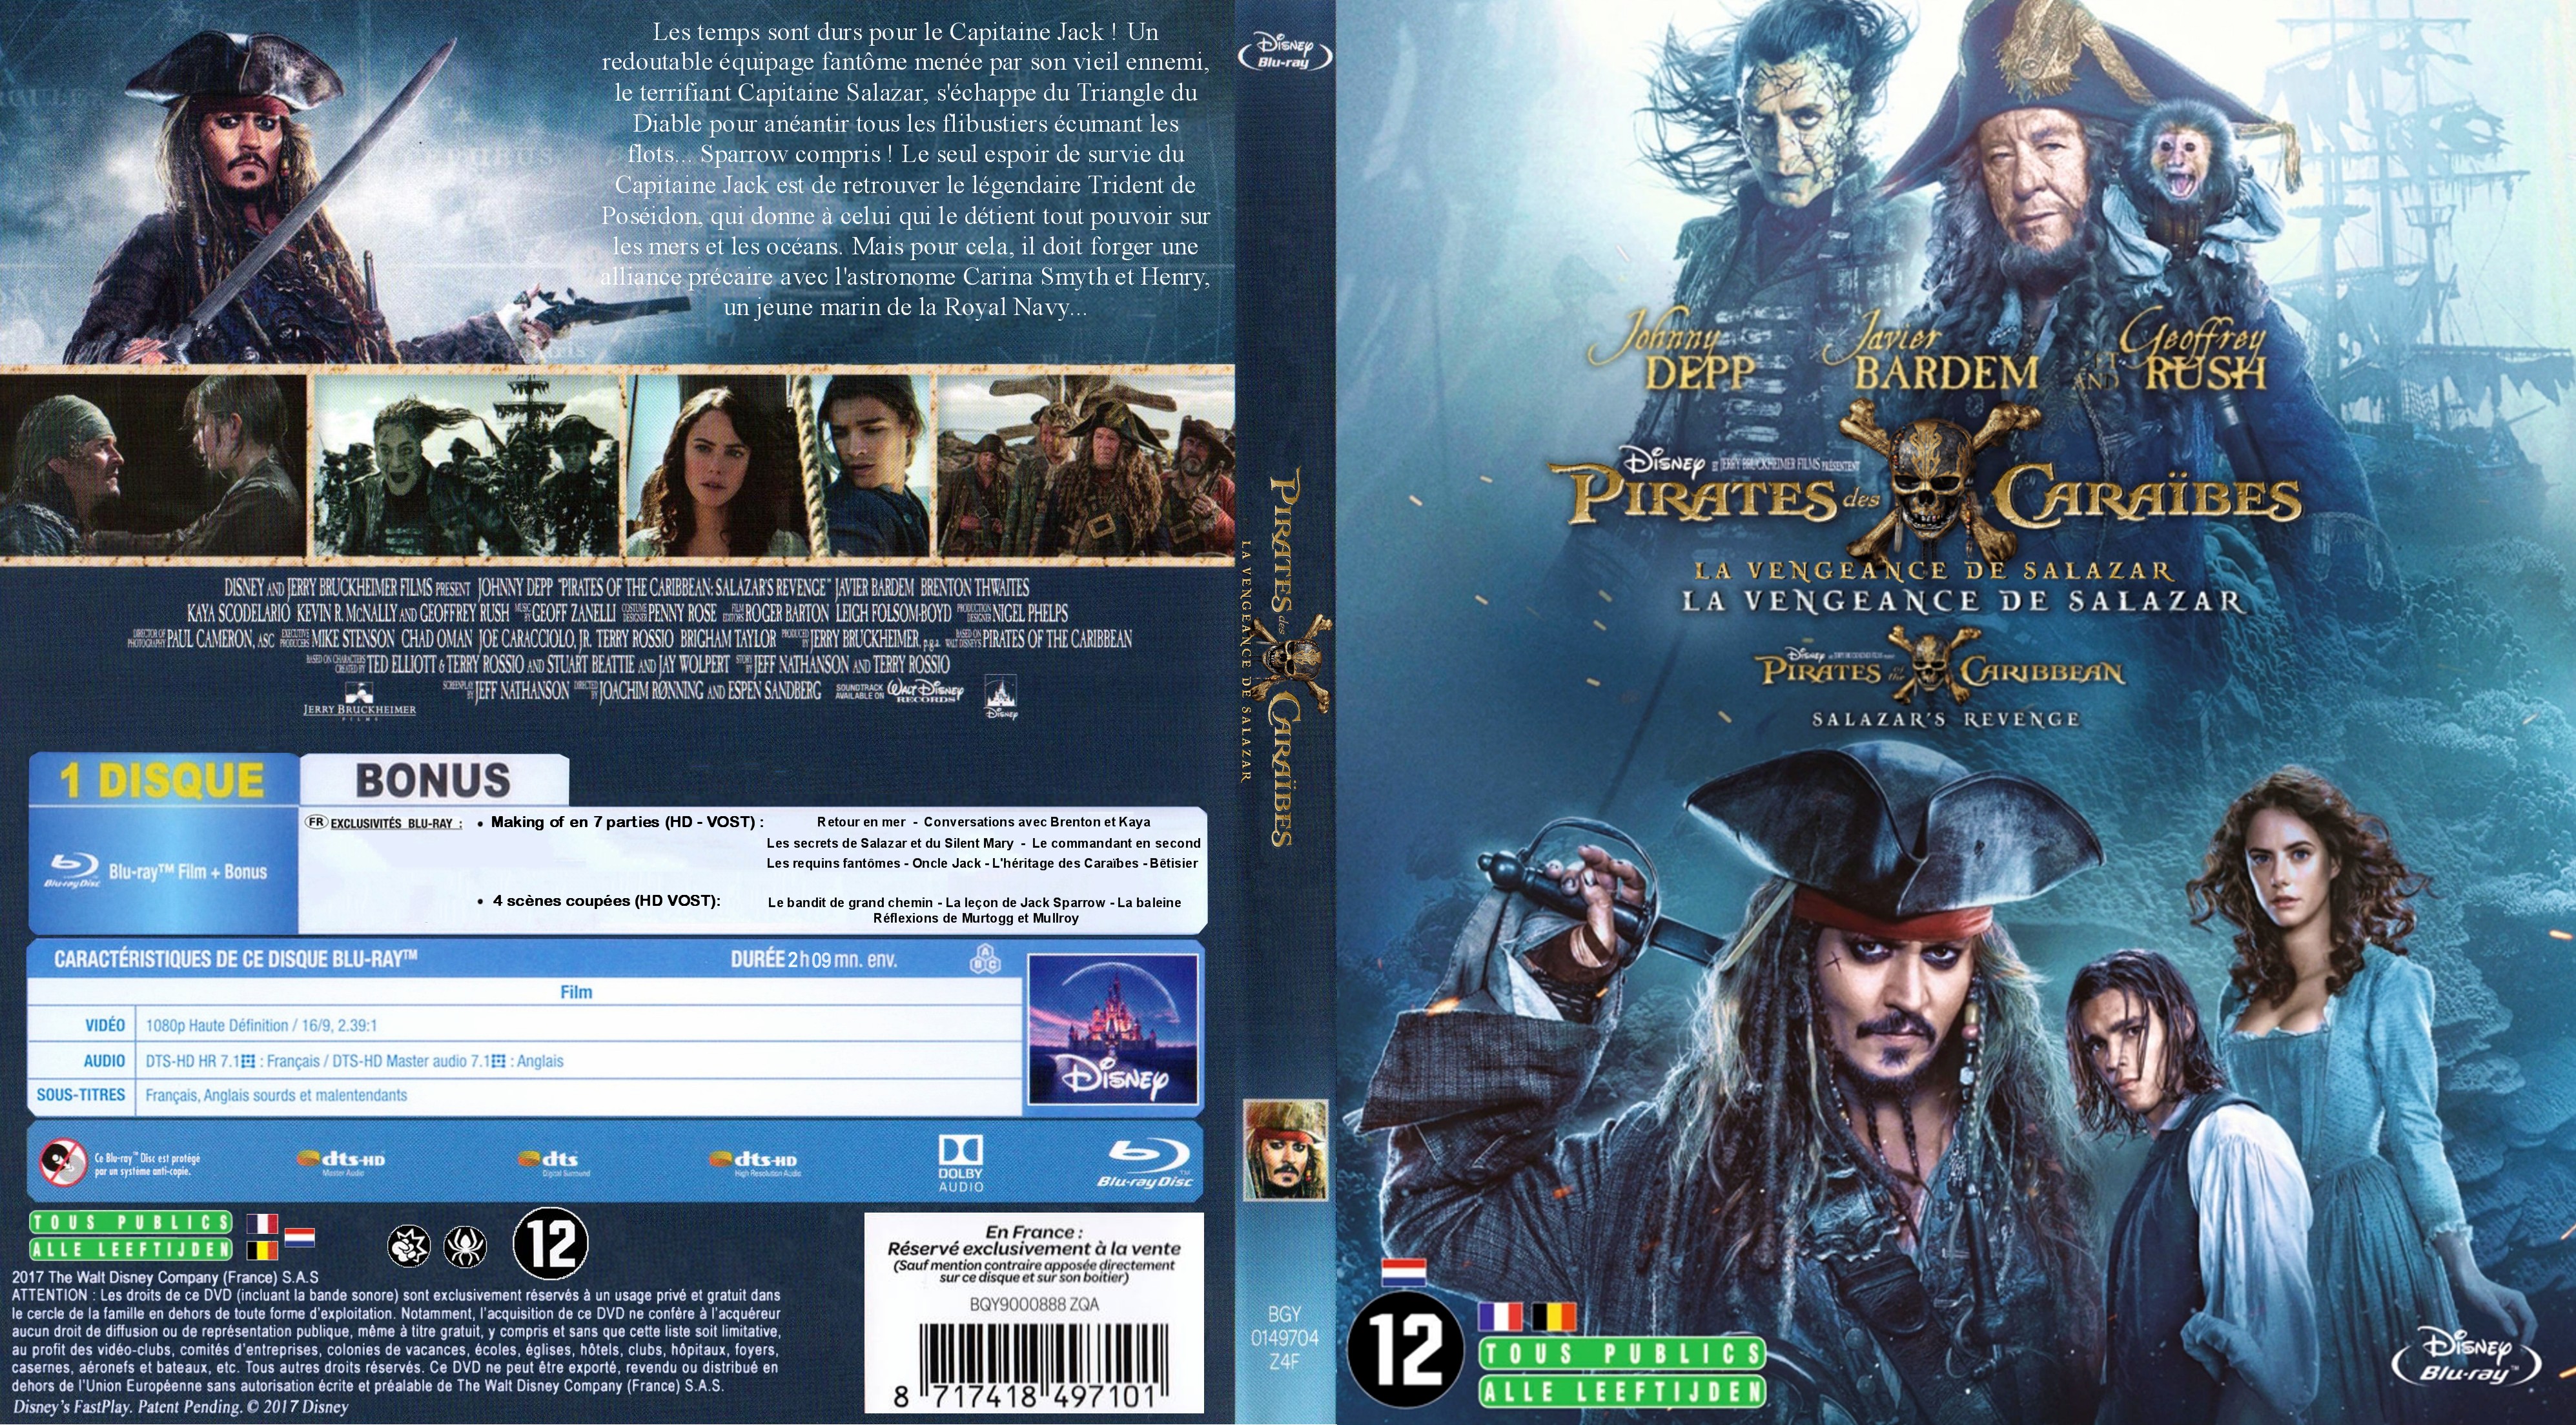 Jaquette DVD Pirates des Caraibes : La Vengeance de Salazar (BLU-RAY) v2